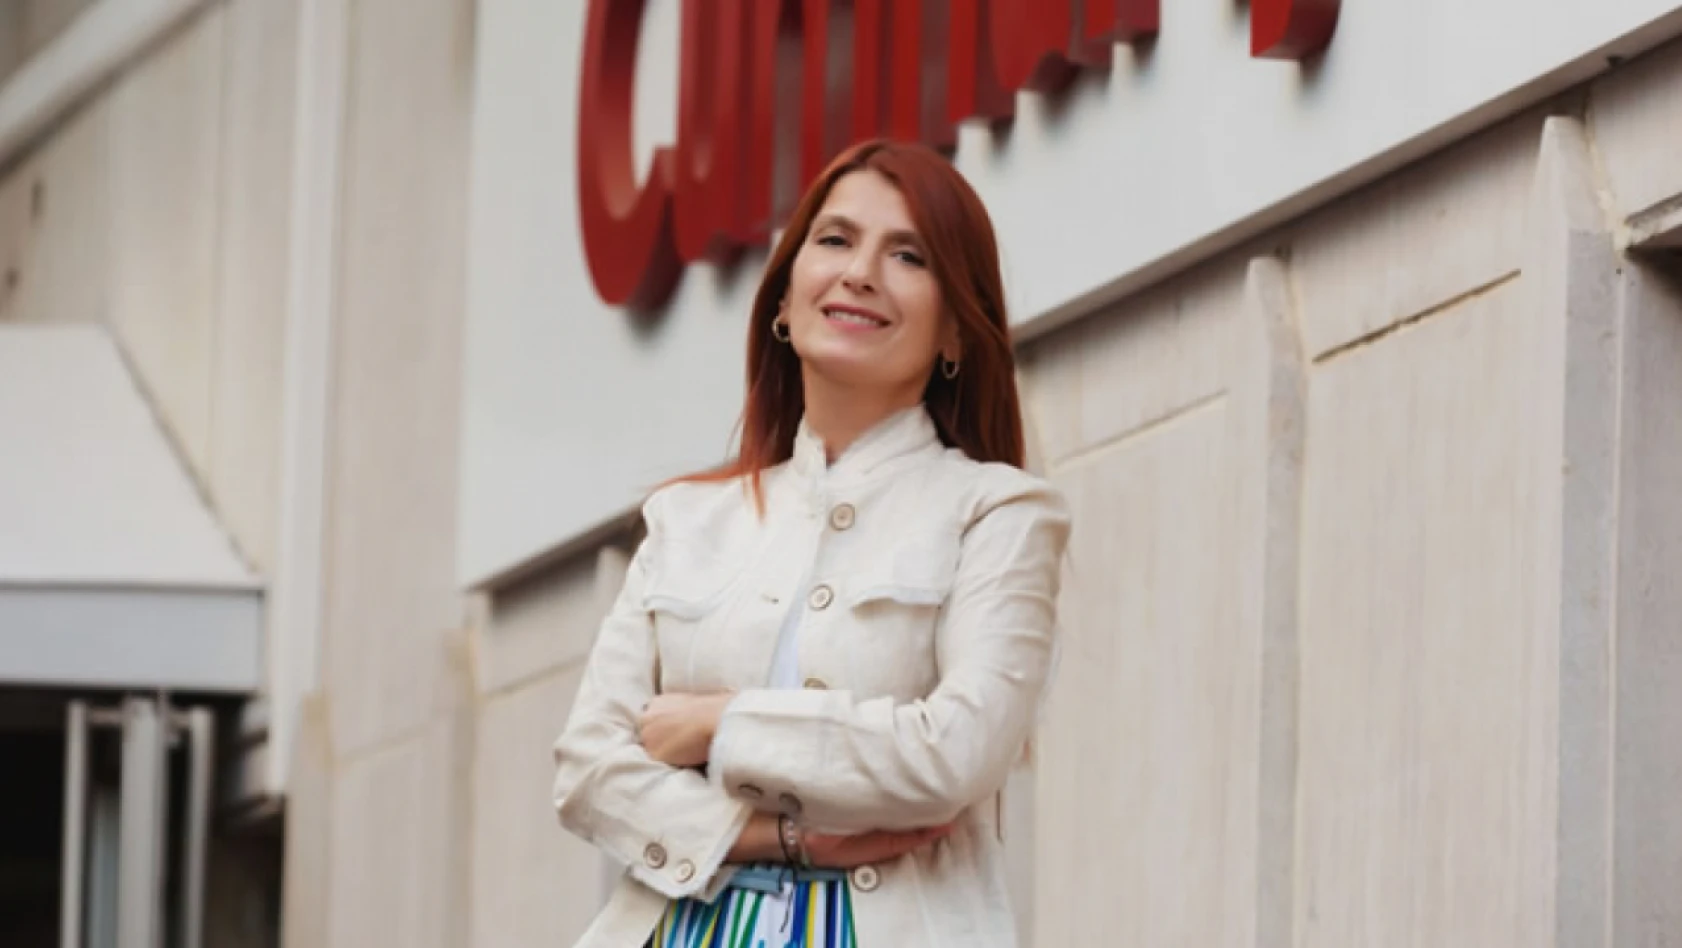 Cumhuriyet Gazetesi'nin ilk kadın Genel Yayın Yönetmeni Mine Esen oldu